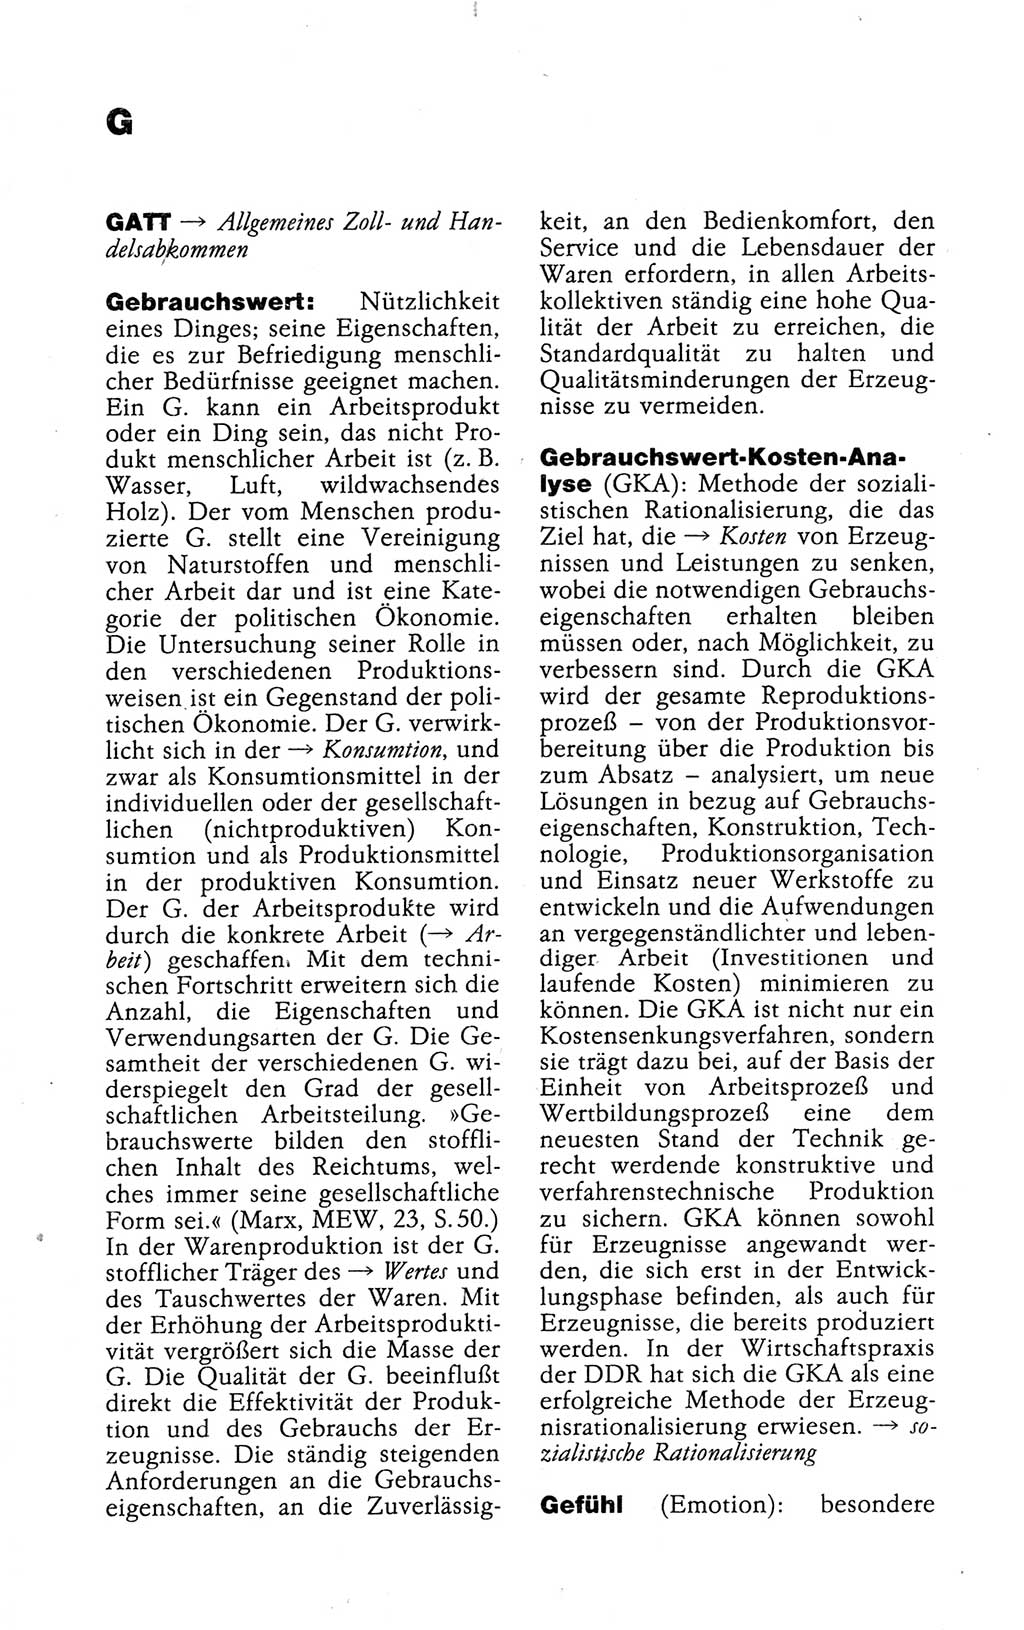 Kleines politisches Wörterbuch [Deutsche Demokratische Republik (DDR)] 1988, Seite 304 (Kl. pol. Wb. DDR 1988, S. 304)